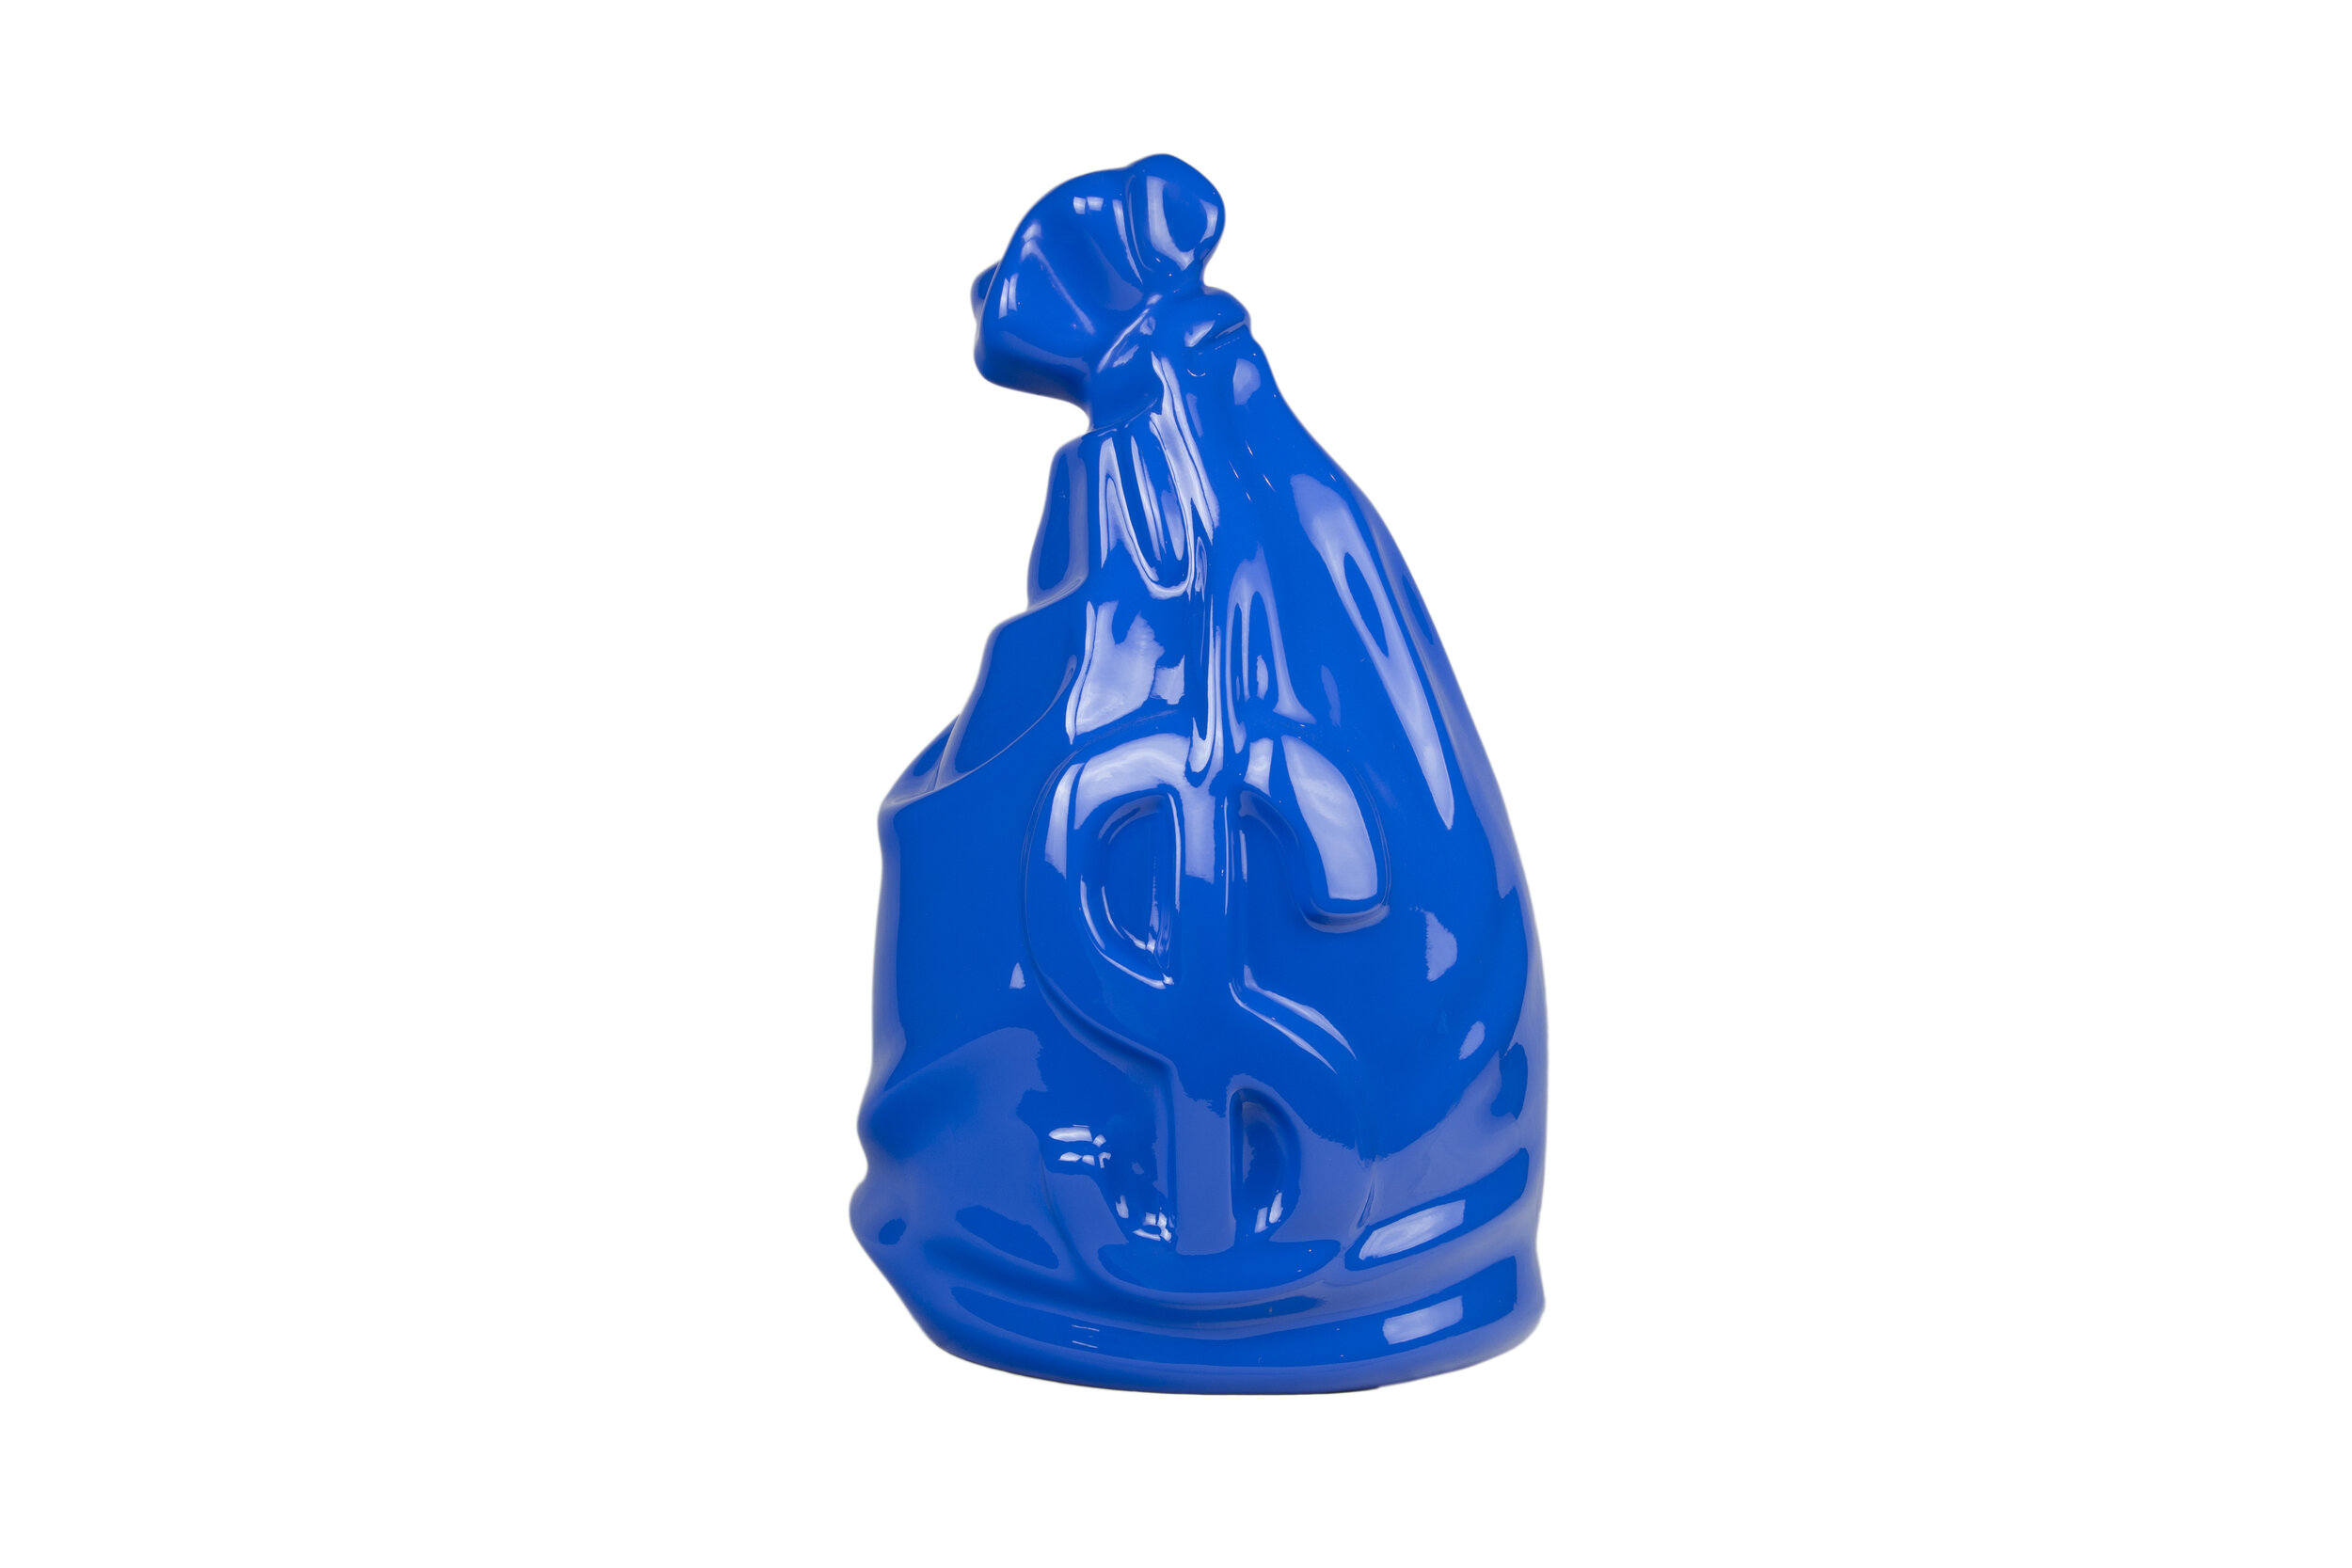 moneybag-sculpture-blue-2020.jpg